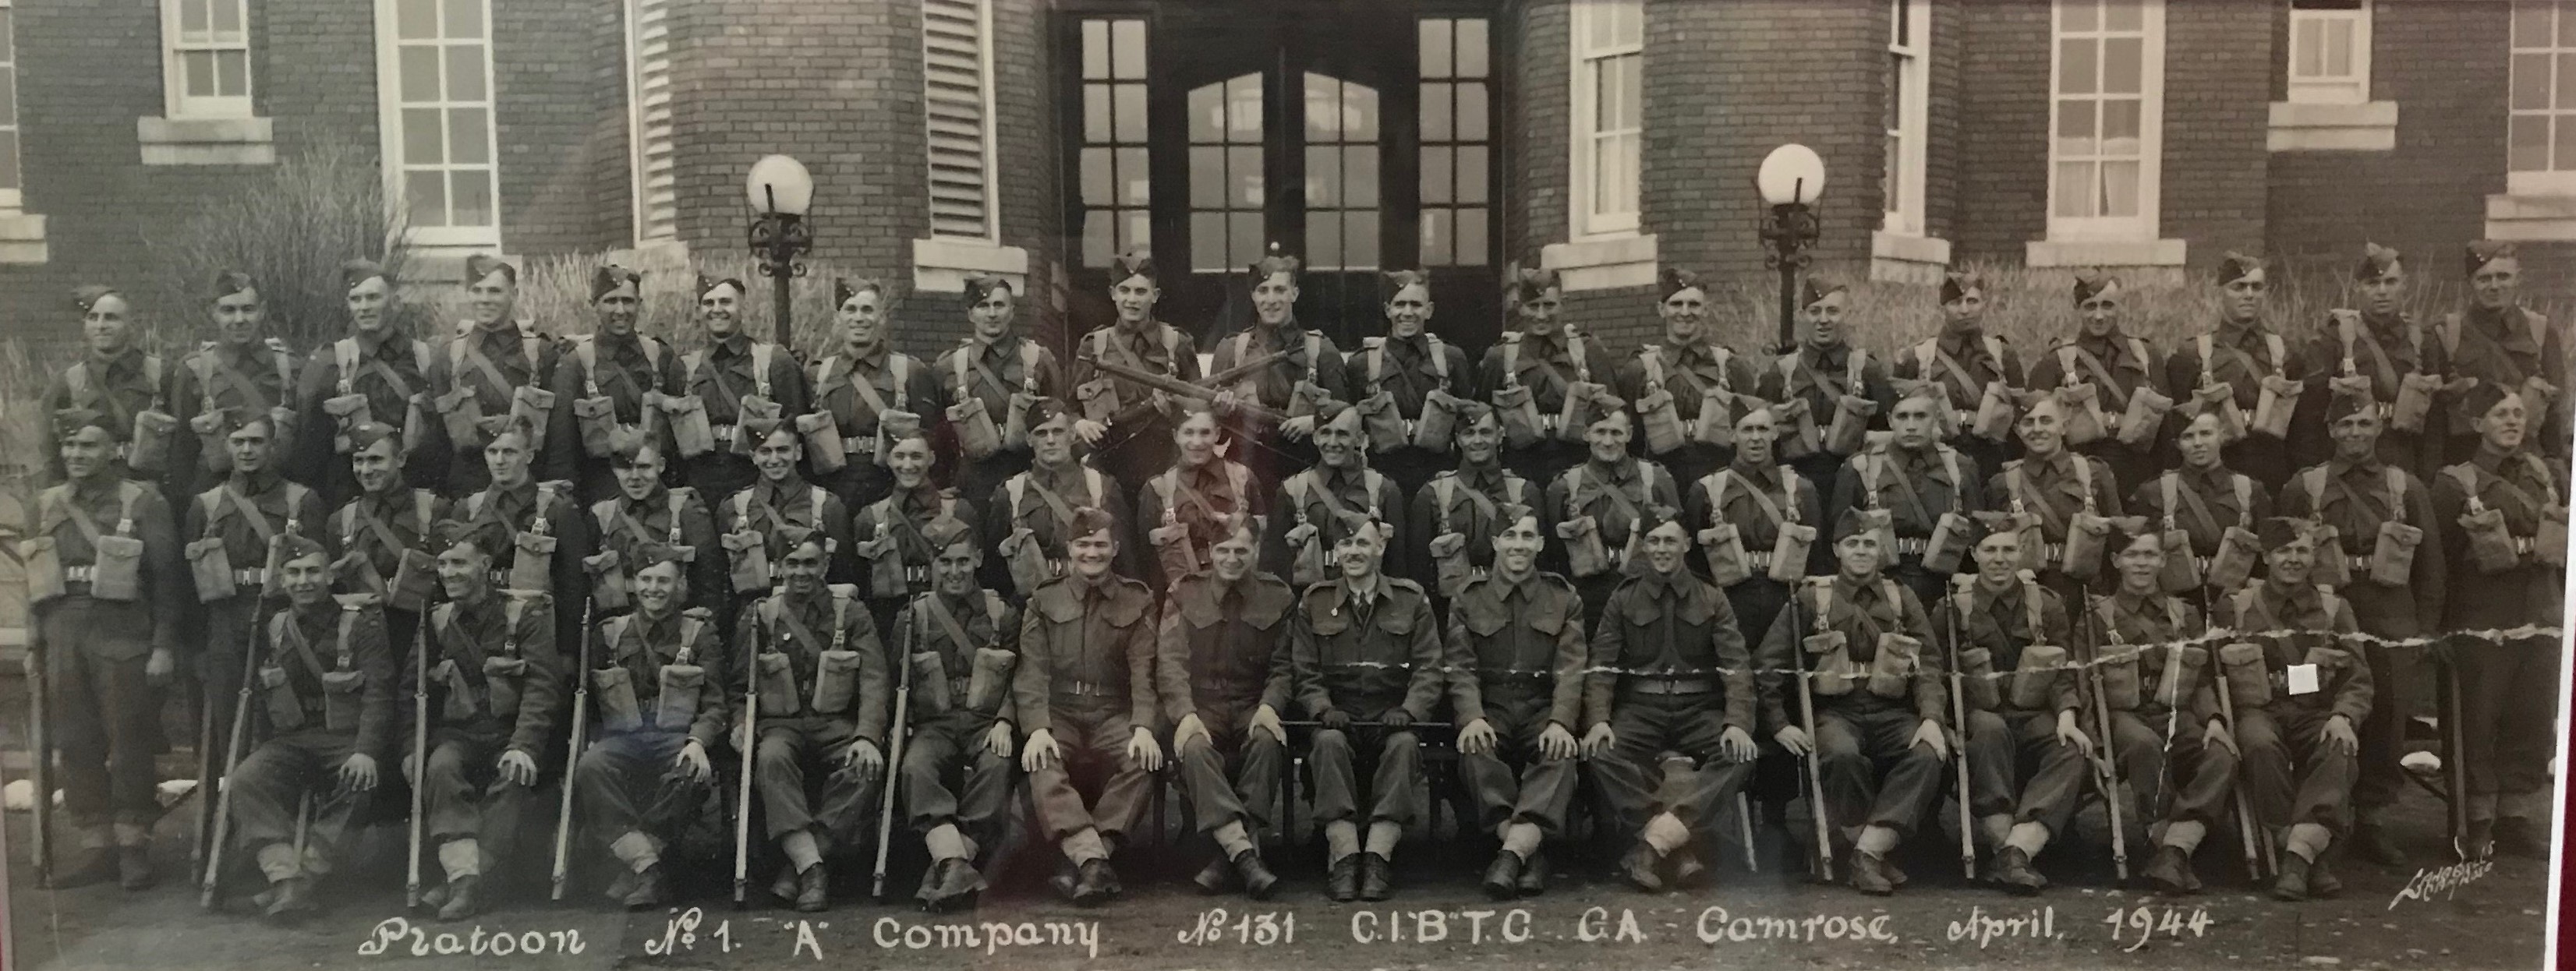 No 1 Platoon A Company, No 131 CIBTC, CA, Camrose April 1944.jpg